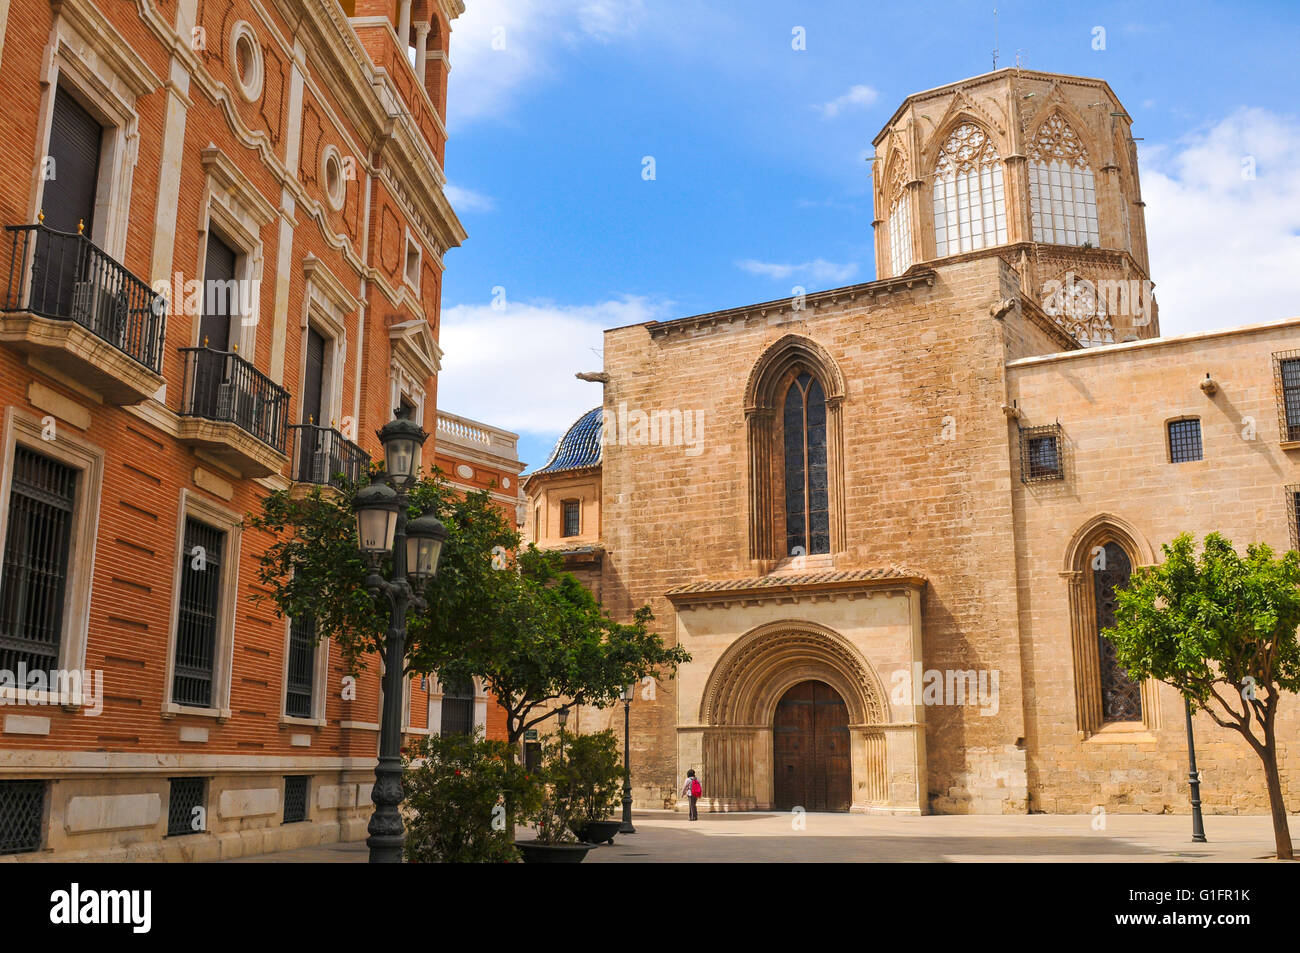 Valencia, Espagne - 30 mars 2016 : Vue de la cathédrale Saint Mary donnant sur la place principale de Valence Banque D'Images